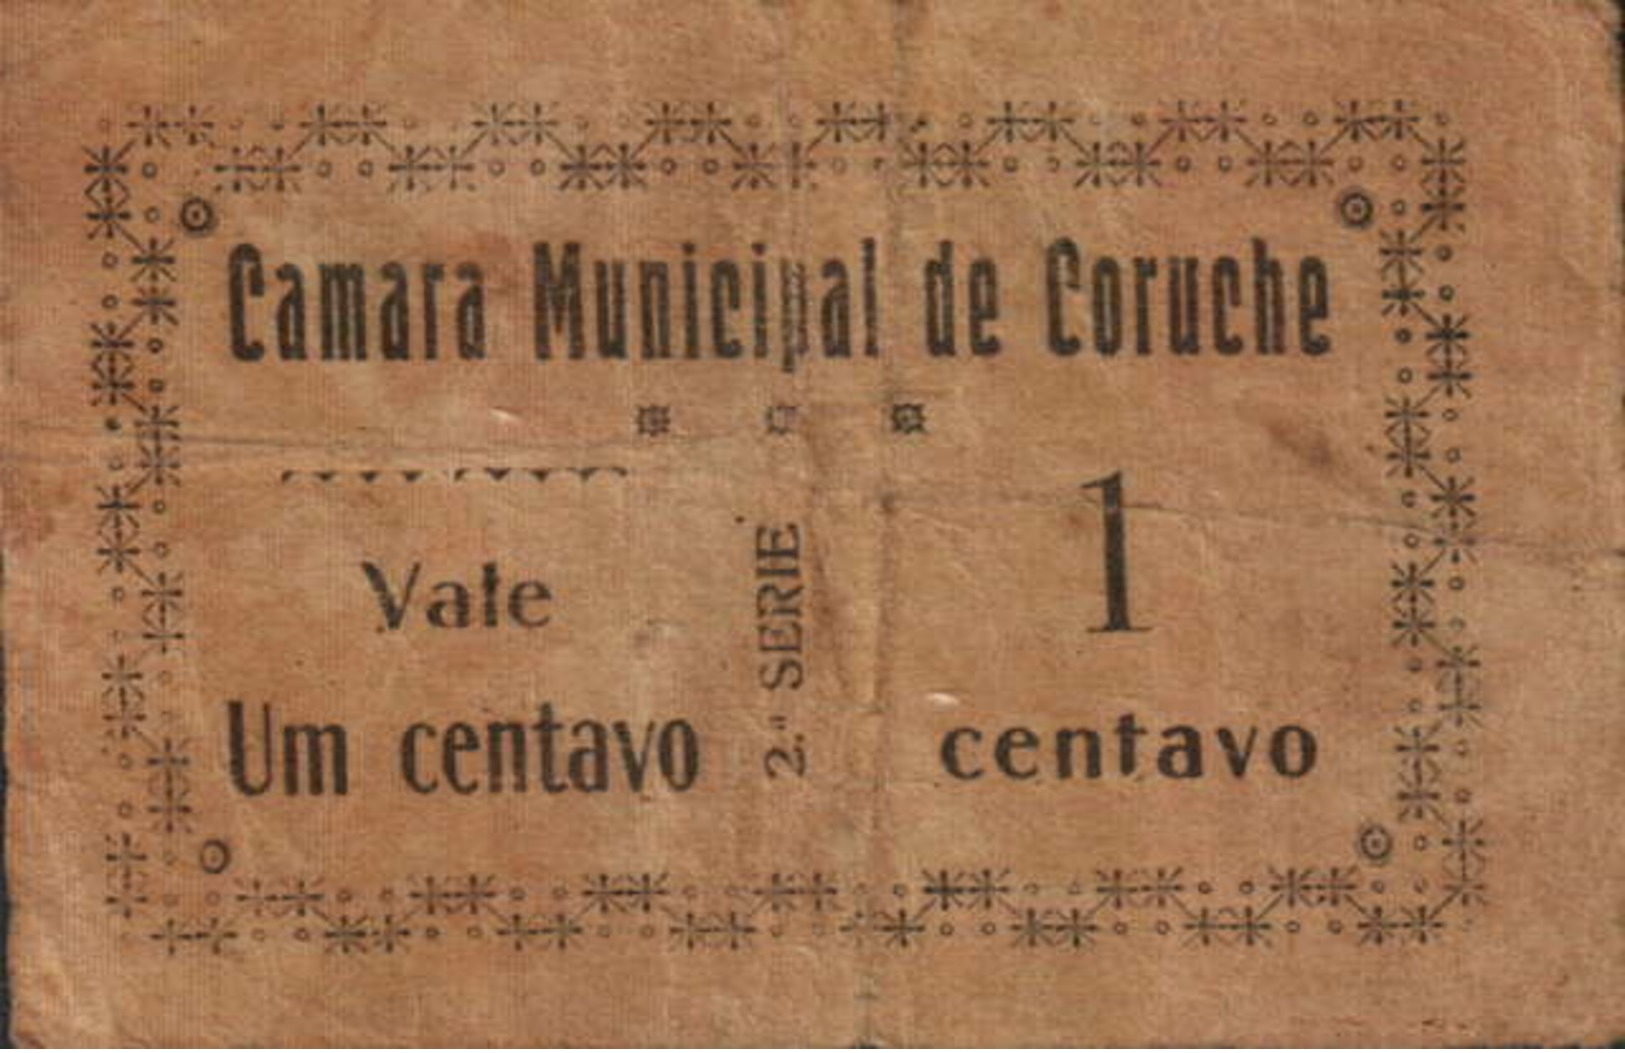 1 CENTAVO 2ª. SÉRIE CÂMARA MUNICIPAL DE CORUCHE - Portugal